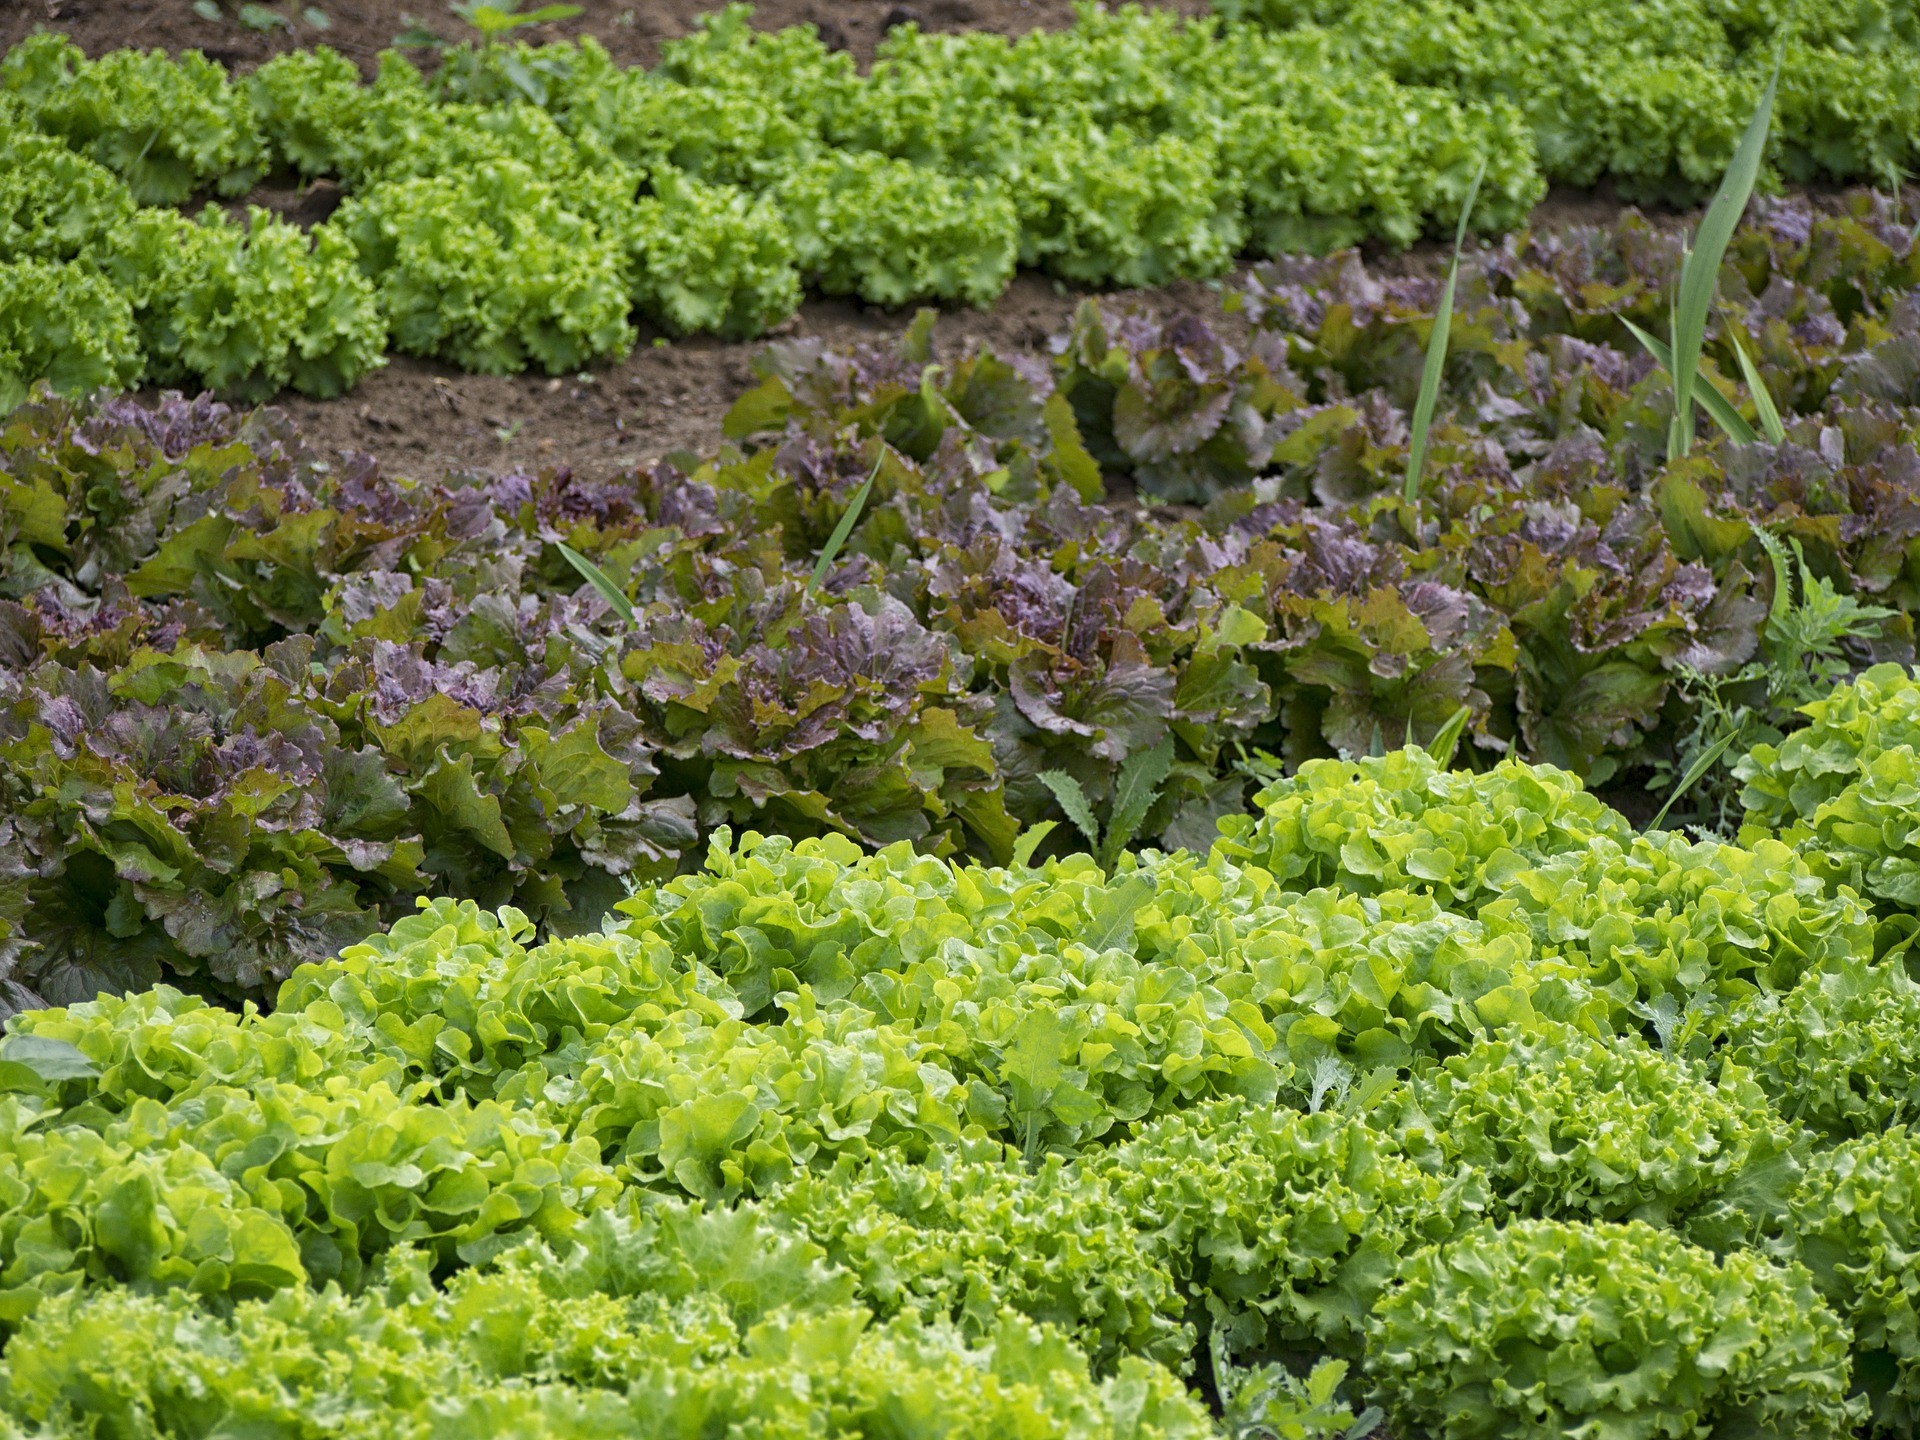 Calda repelente pode ajudar a contornar problemas nas hortaliças (Foto: Pixabay)